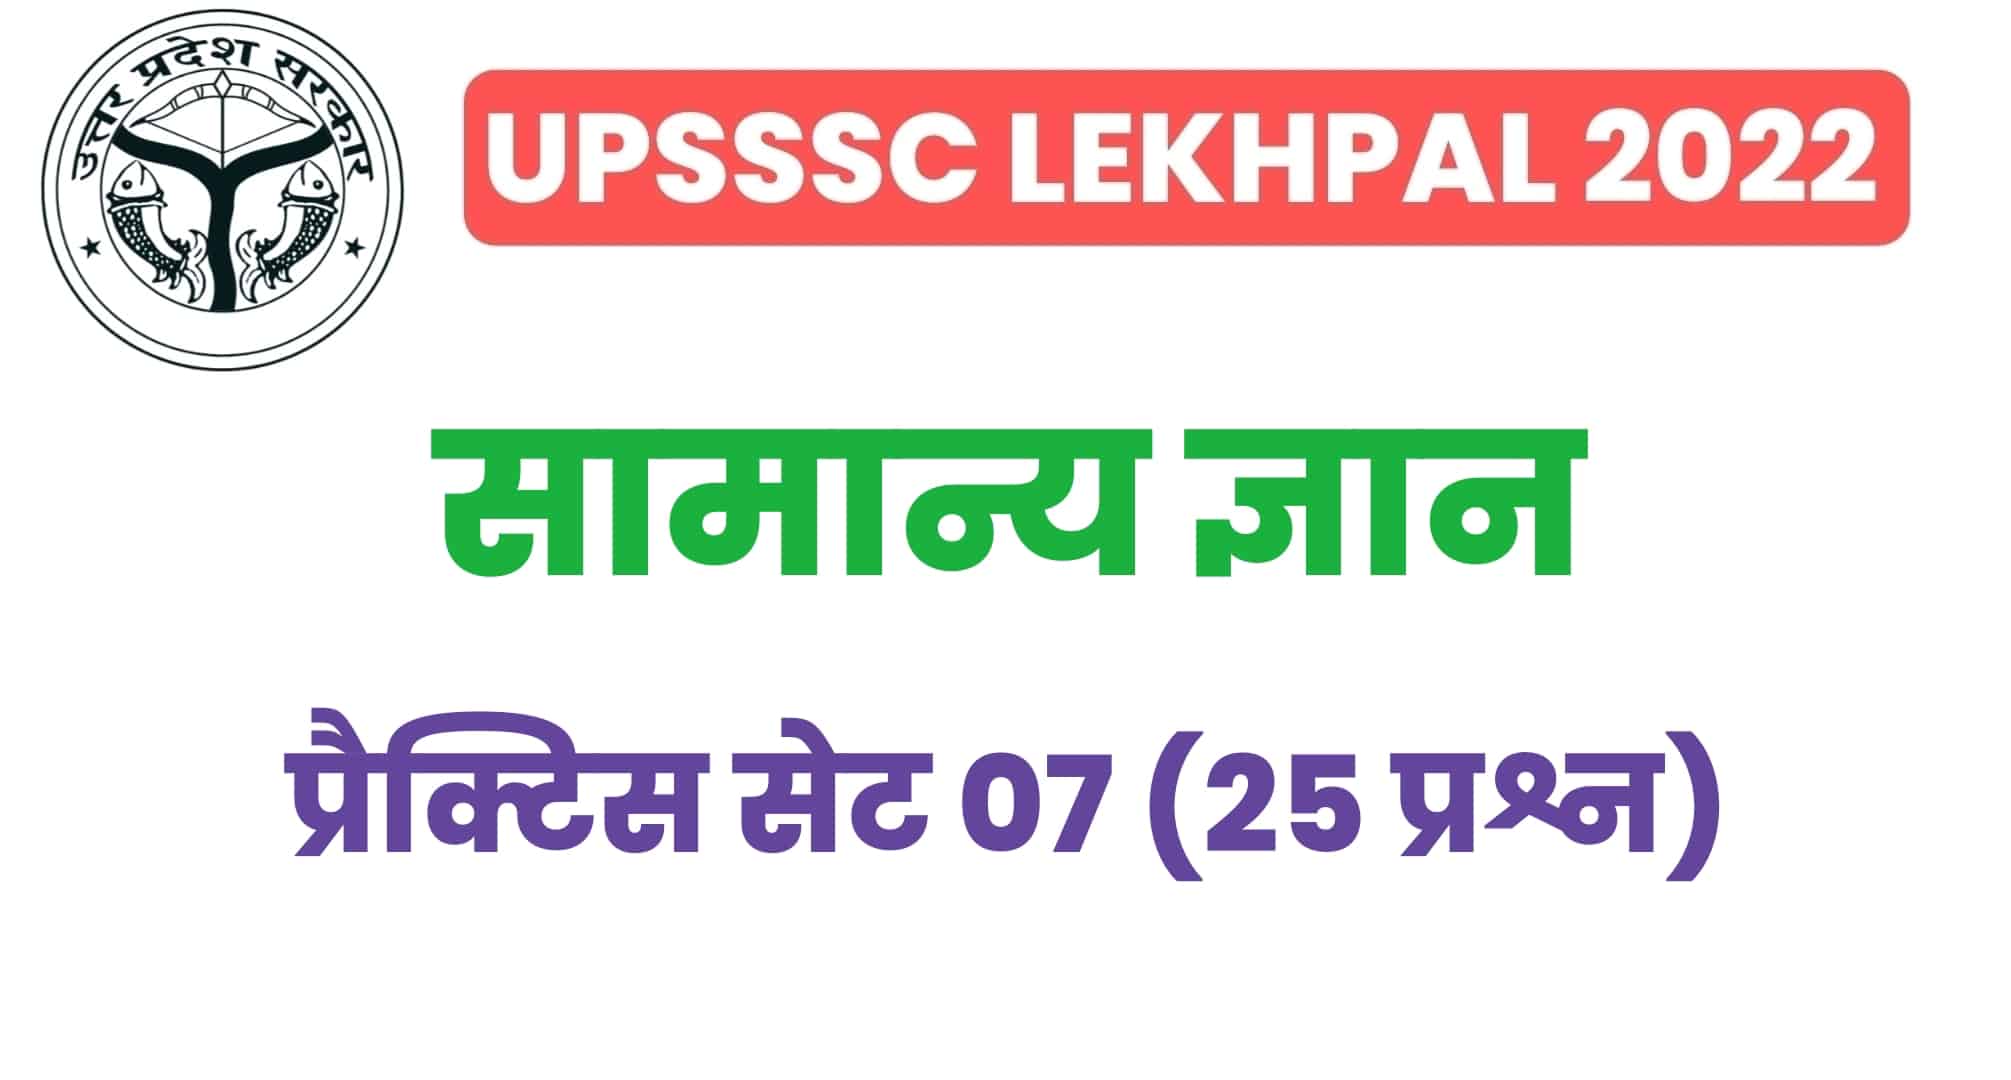 UP Lekhpal सामान्य ज्ञान प्रैक्टिस सेट 07 : परीक्षा में बैठनें से पहले इन 25 महत्वपूर्ण प्रश्नों का करें अध्ययन